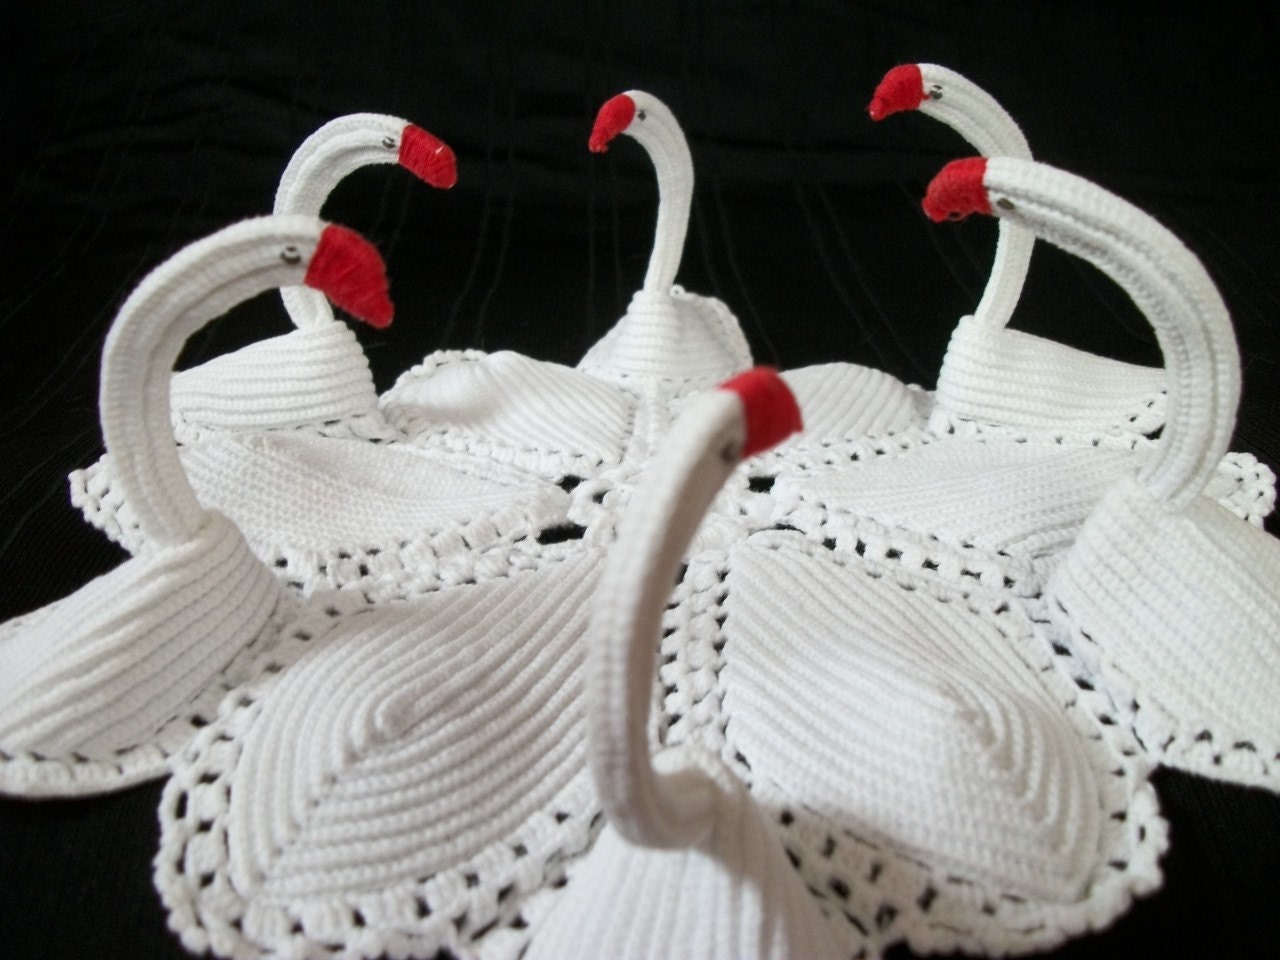 FILET CROCHET NAME DOILIES PATTERN - Crochet вЂ” Learn How to Crochet